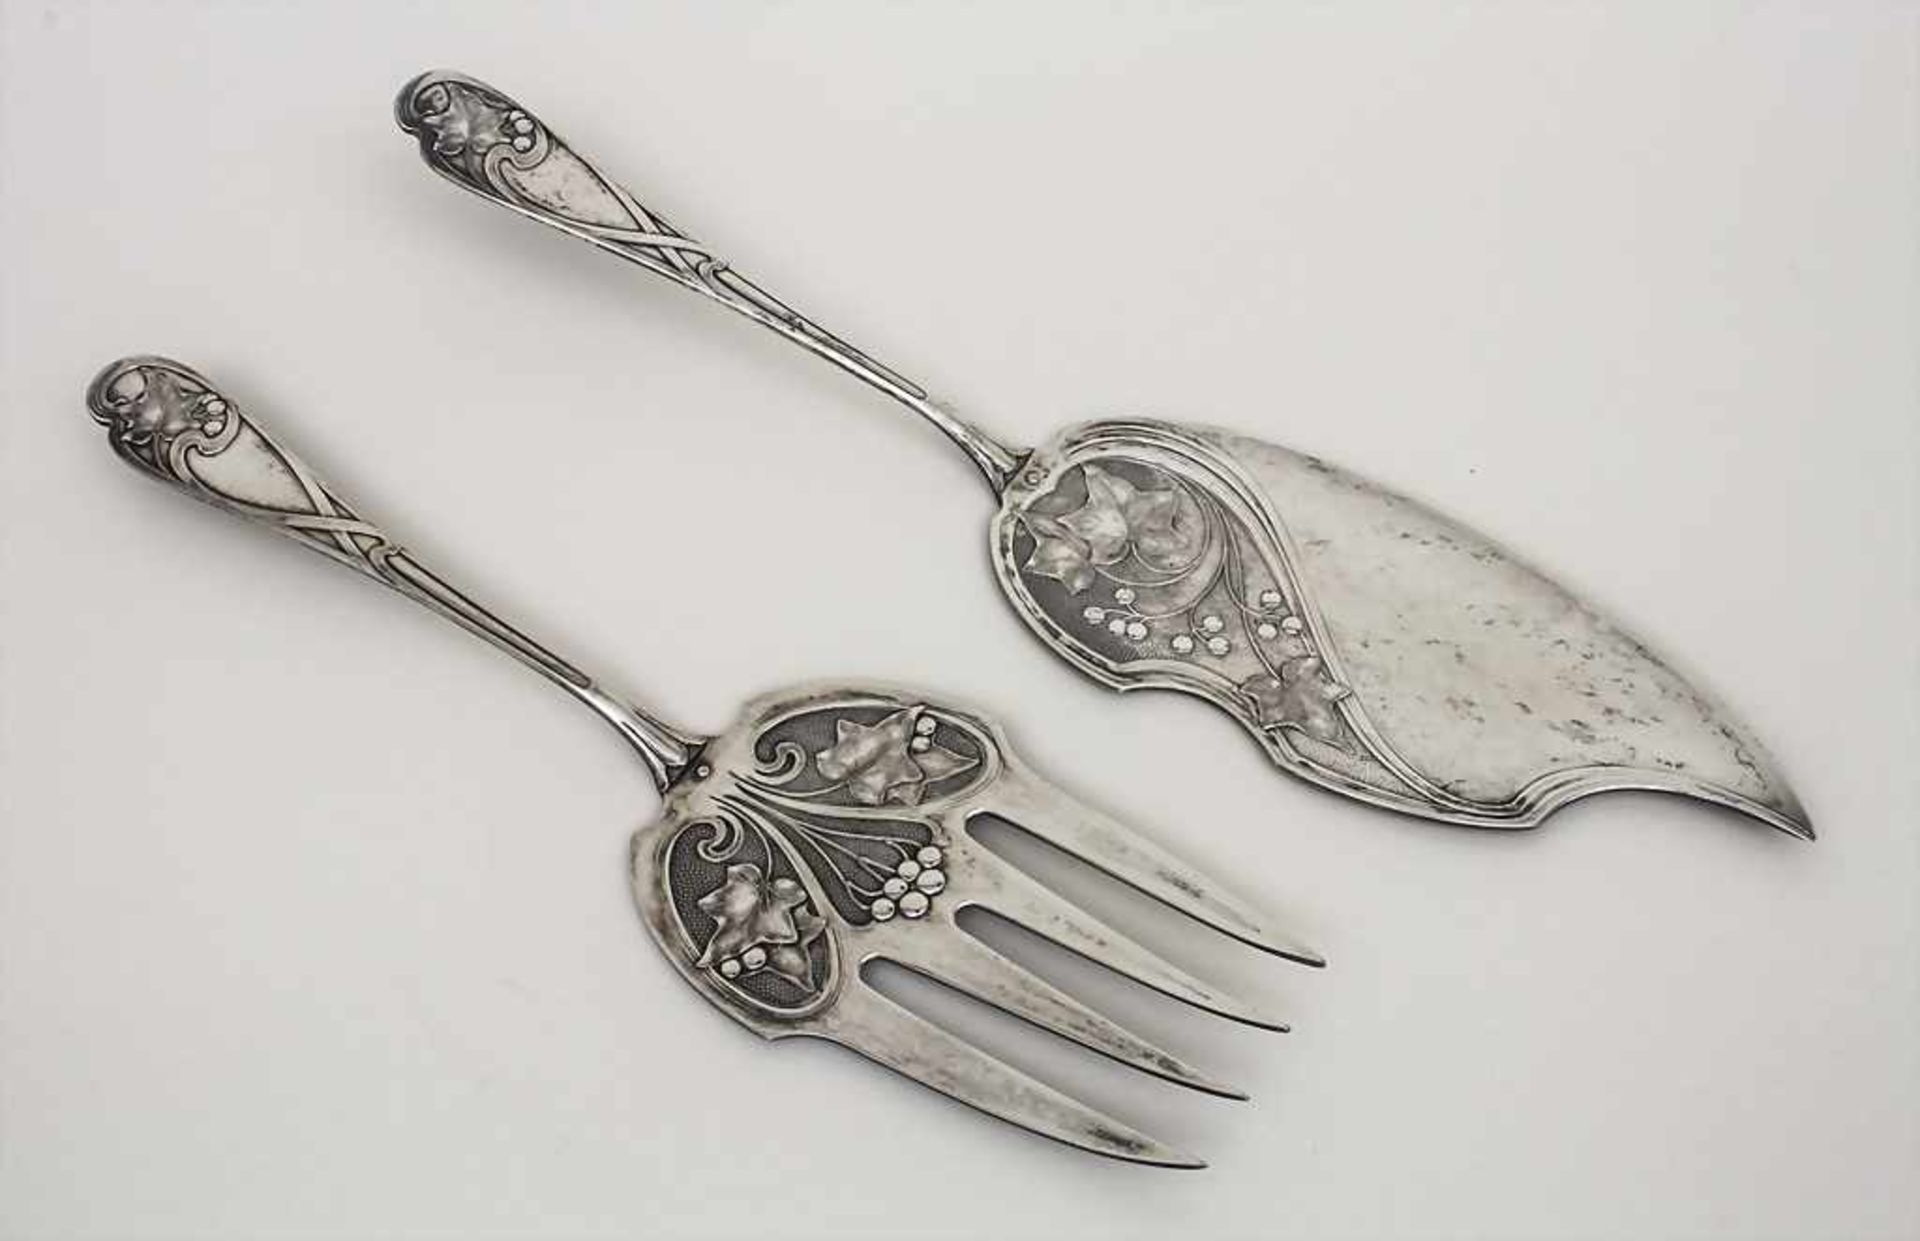 2 Teile Jugendstil Vorlegebesteck 'Efeu' / 2 pieces Art Nouveau serving cutlery 'Ivy', WMF,